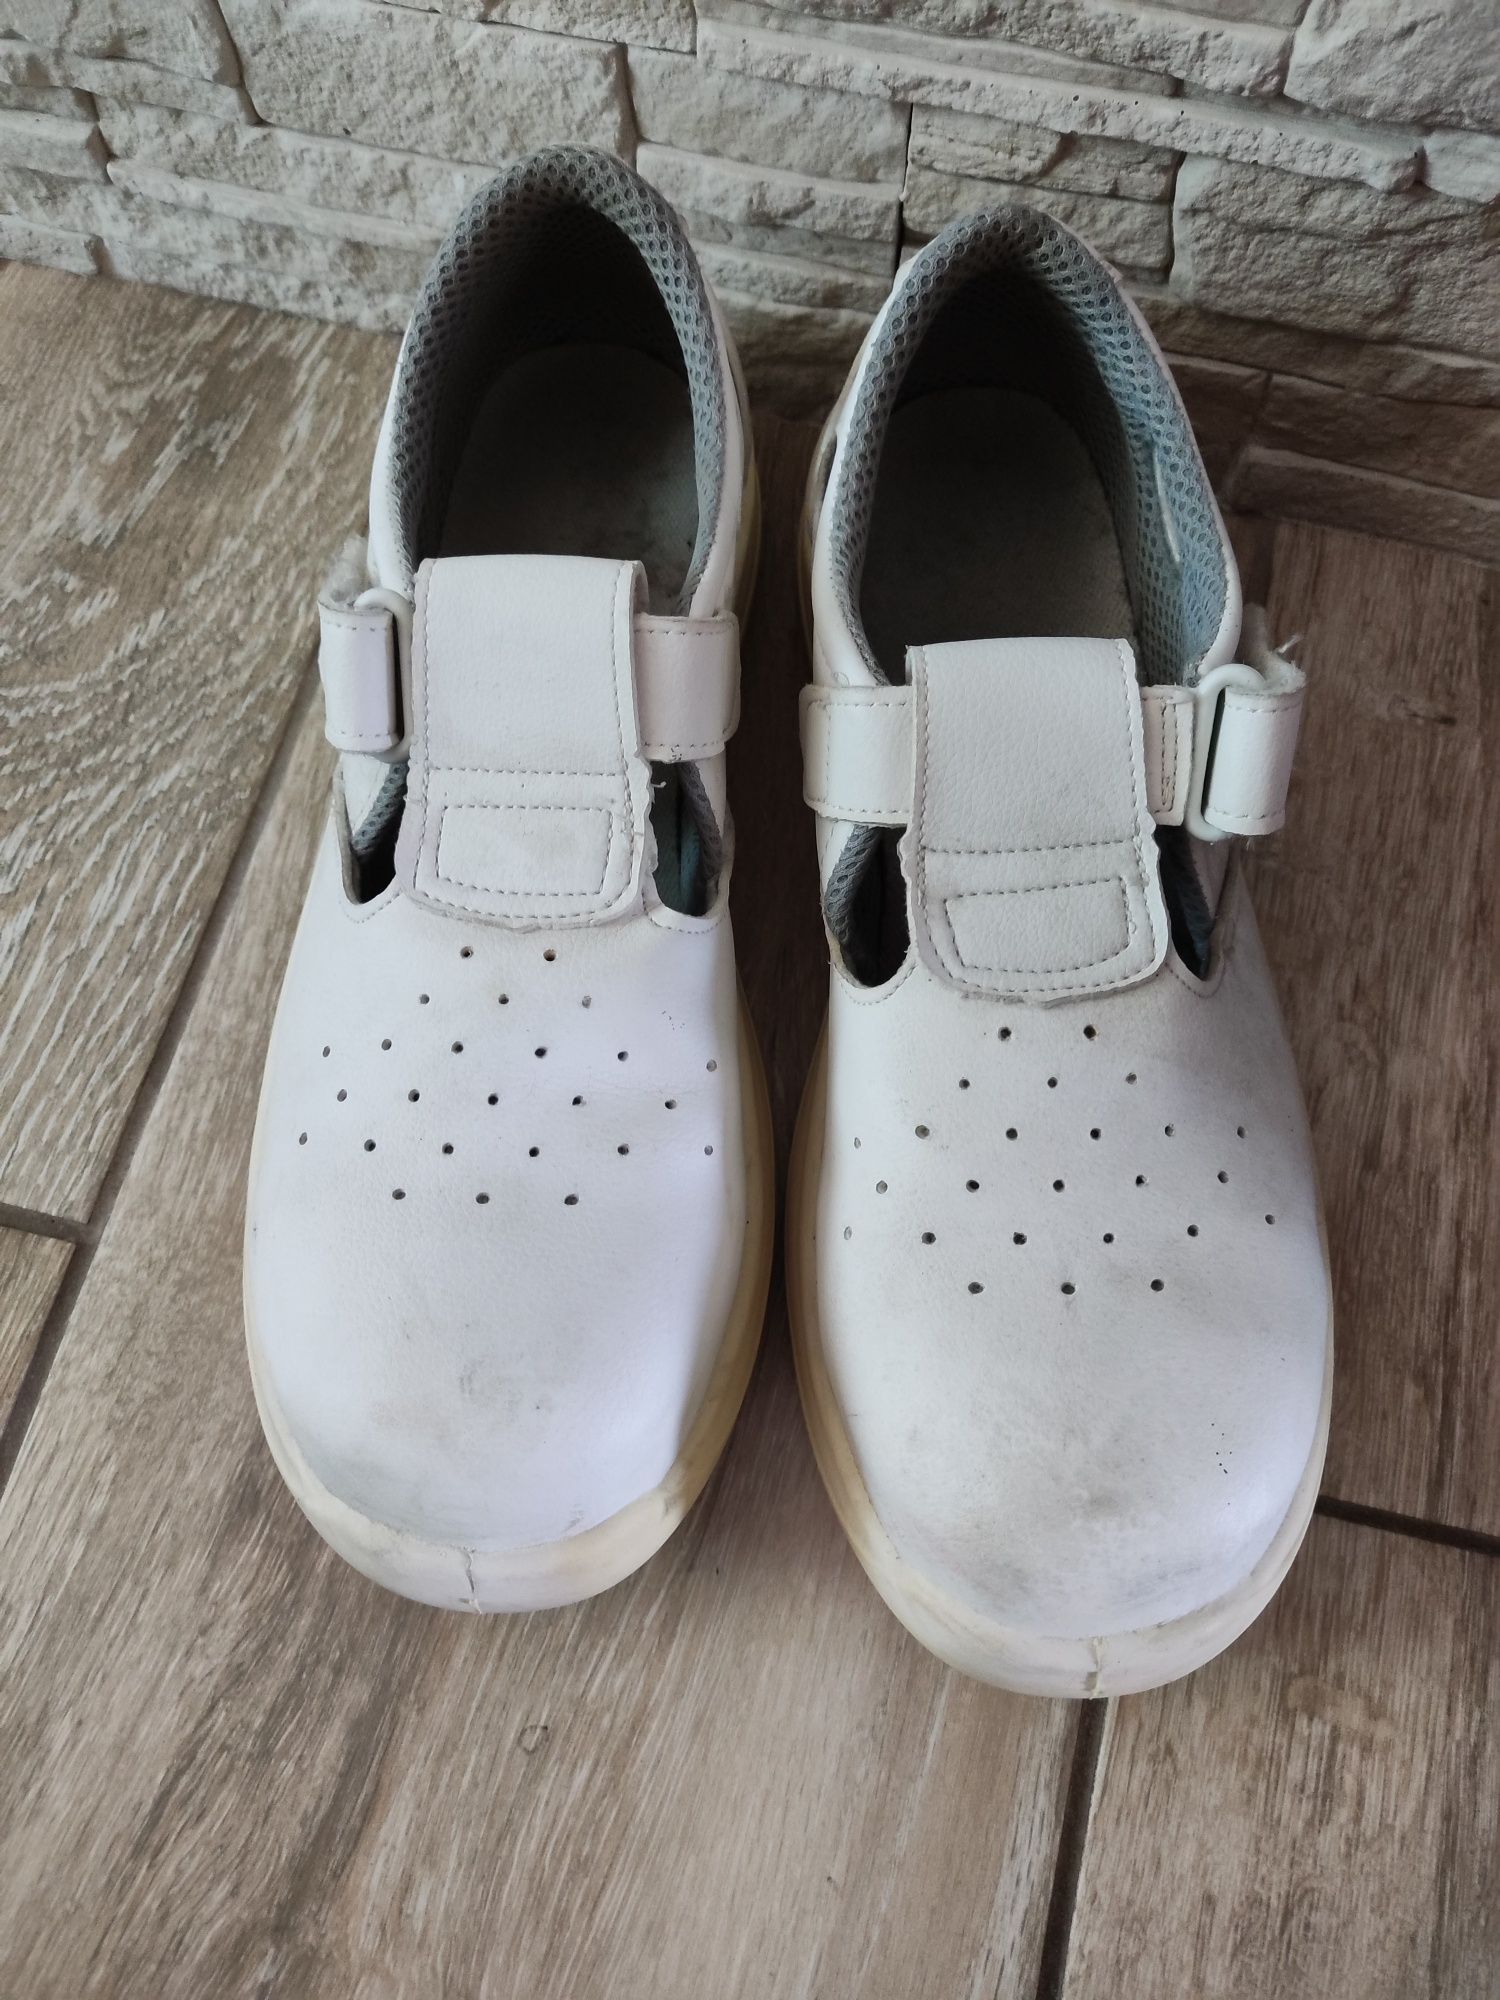 Buty BHP białe sandały 43 jak nowe